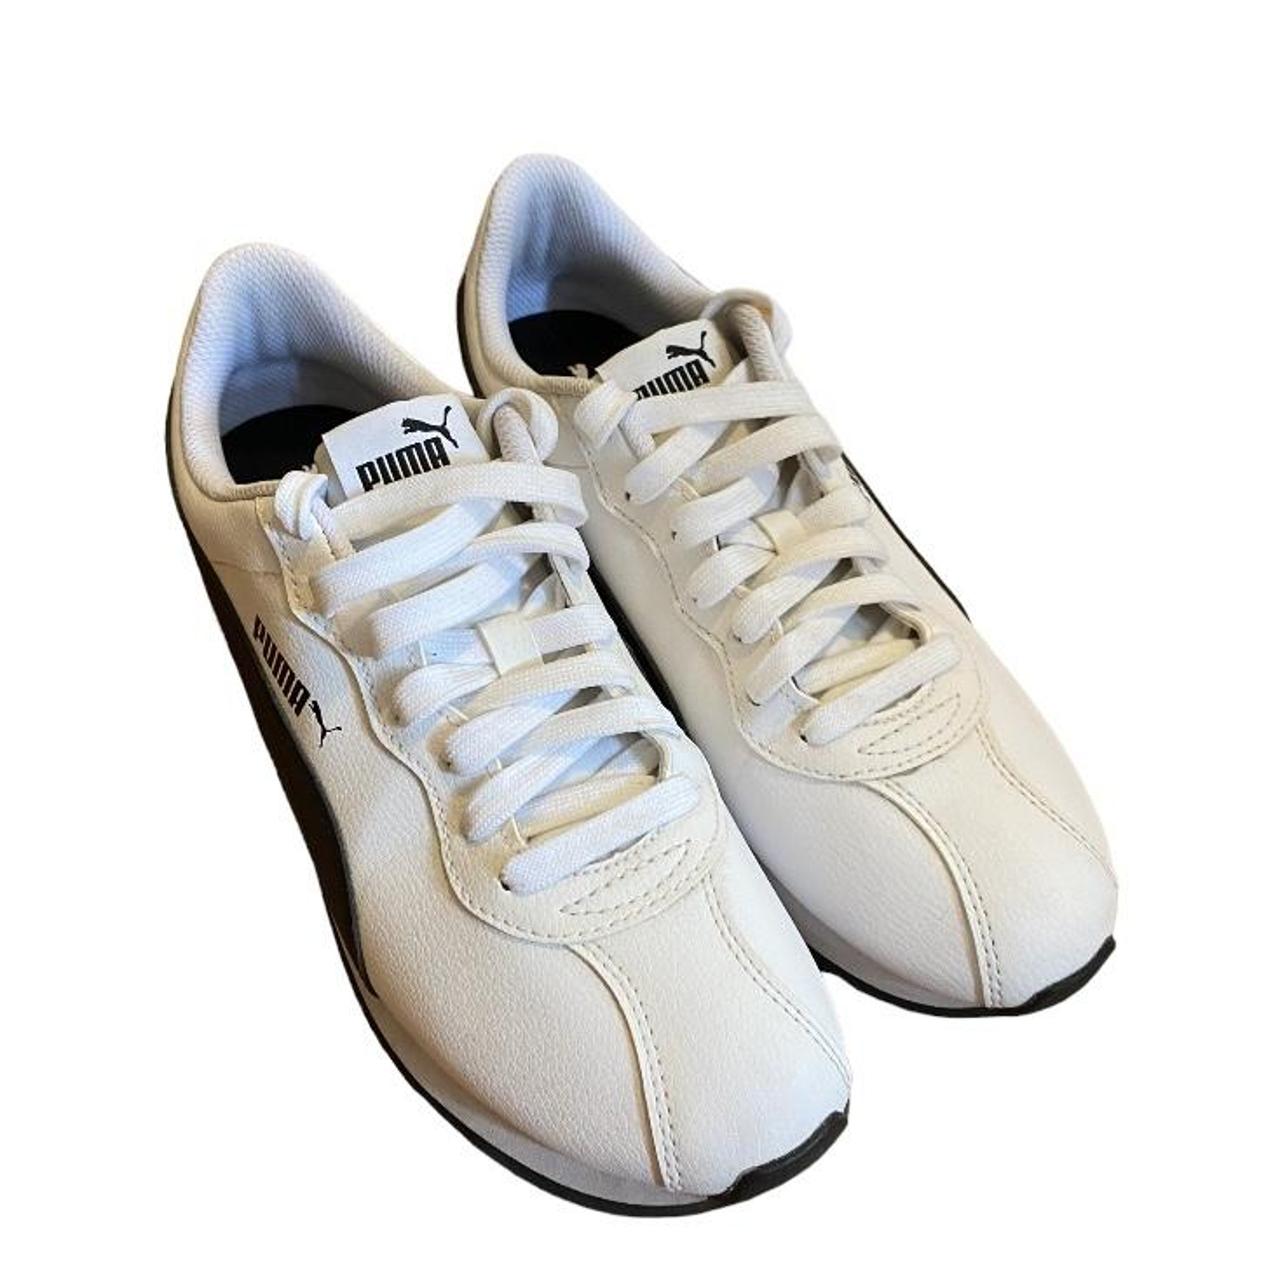 Puma Turin II AC Soft Foam White Casual Sneaker 366775-02 Kids Size 11C |  eBay